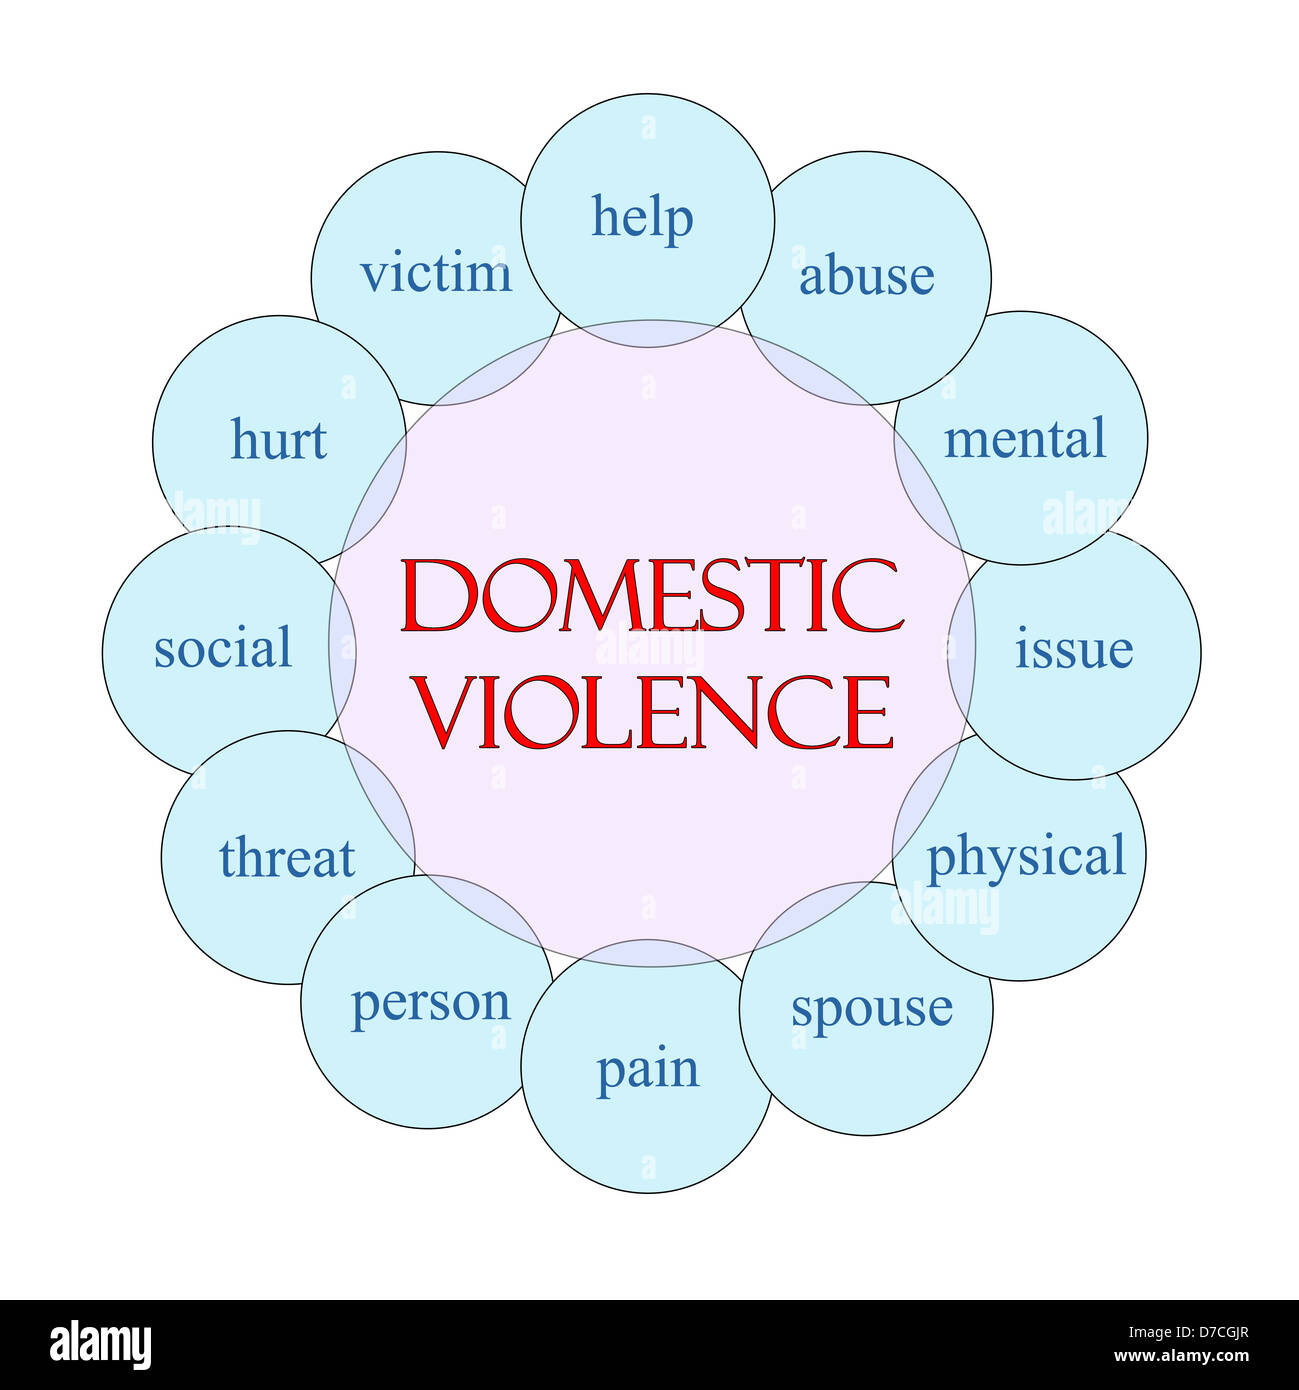 Häusliche Gewalt Konzept kreisförmige Darstellung in Pink und blau mit großen Begriffe wie Opfer, Hilfe, Missbrauch, Schmerzen und Ehepartner. Stockfoto